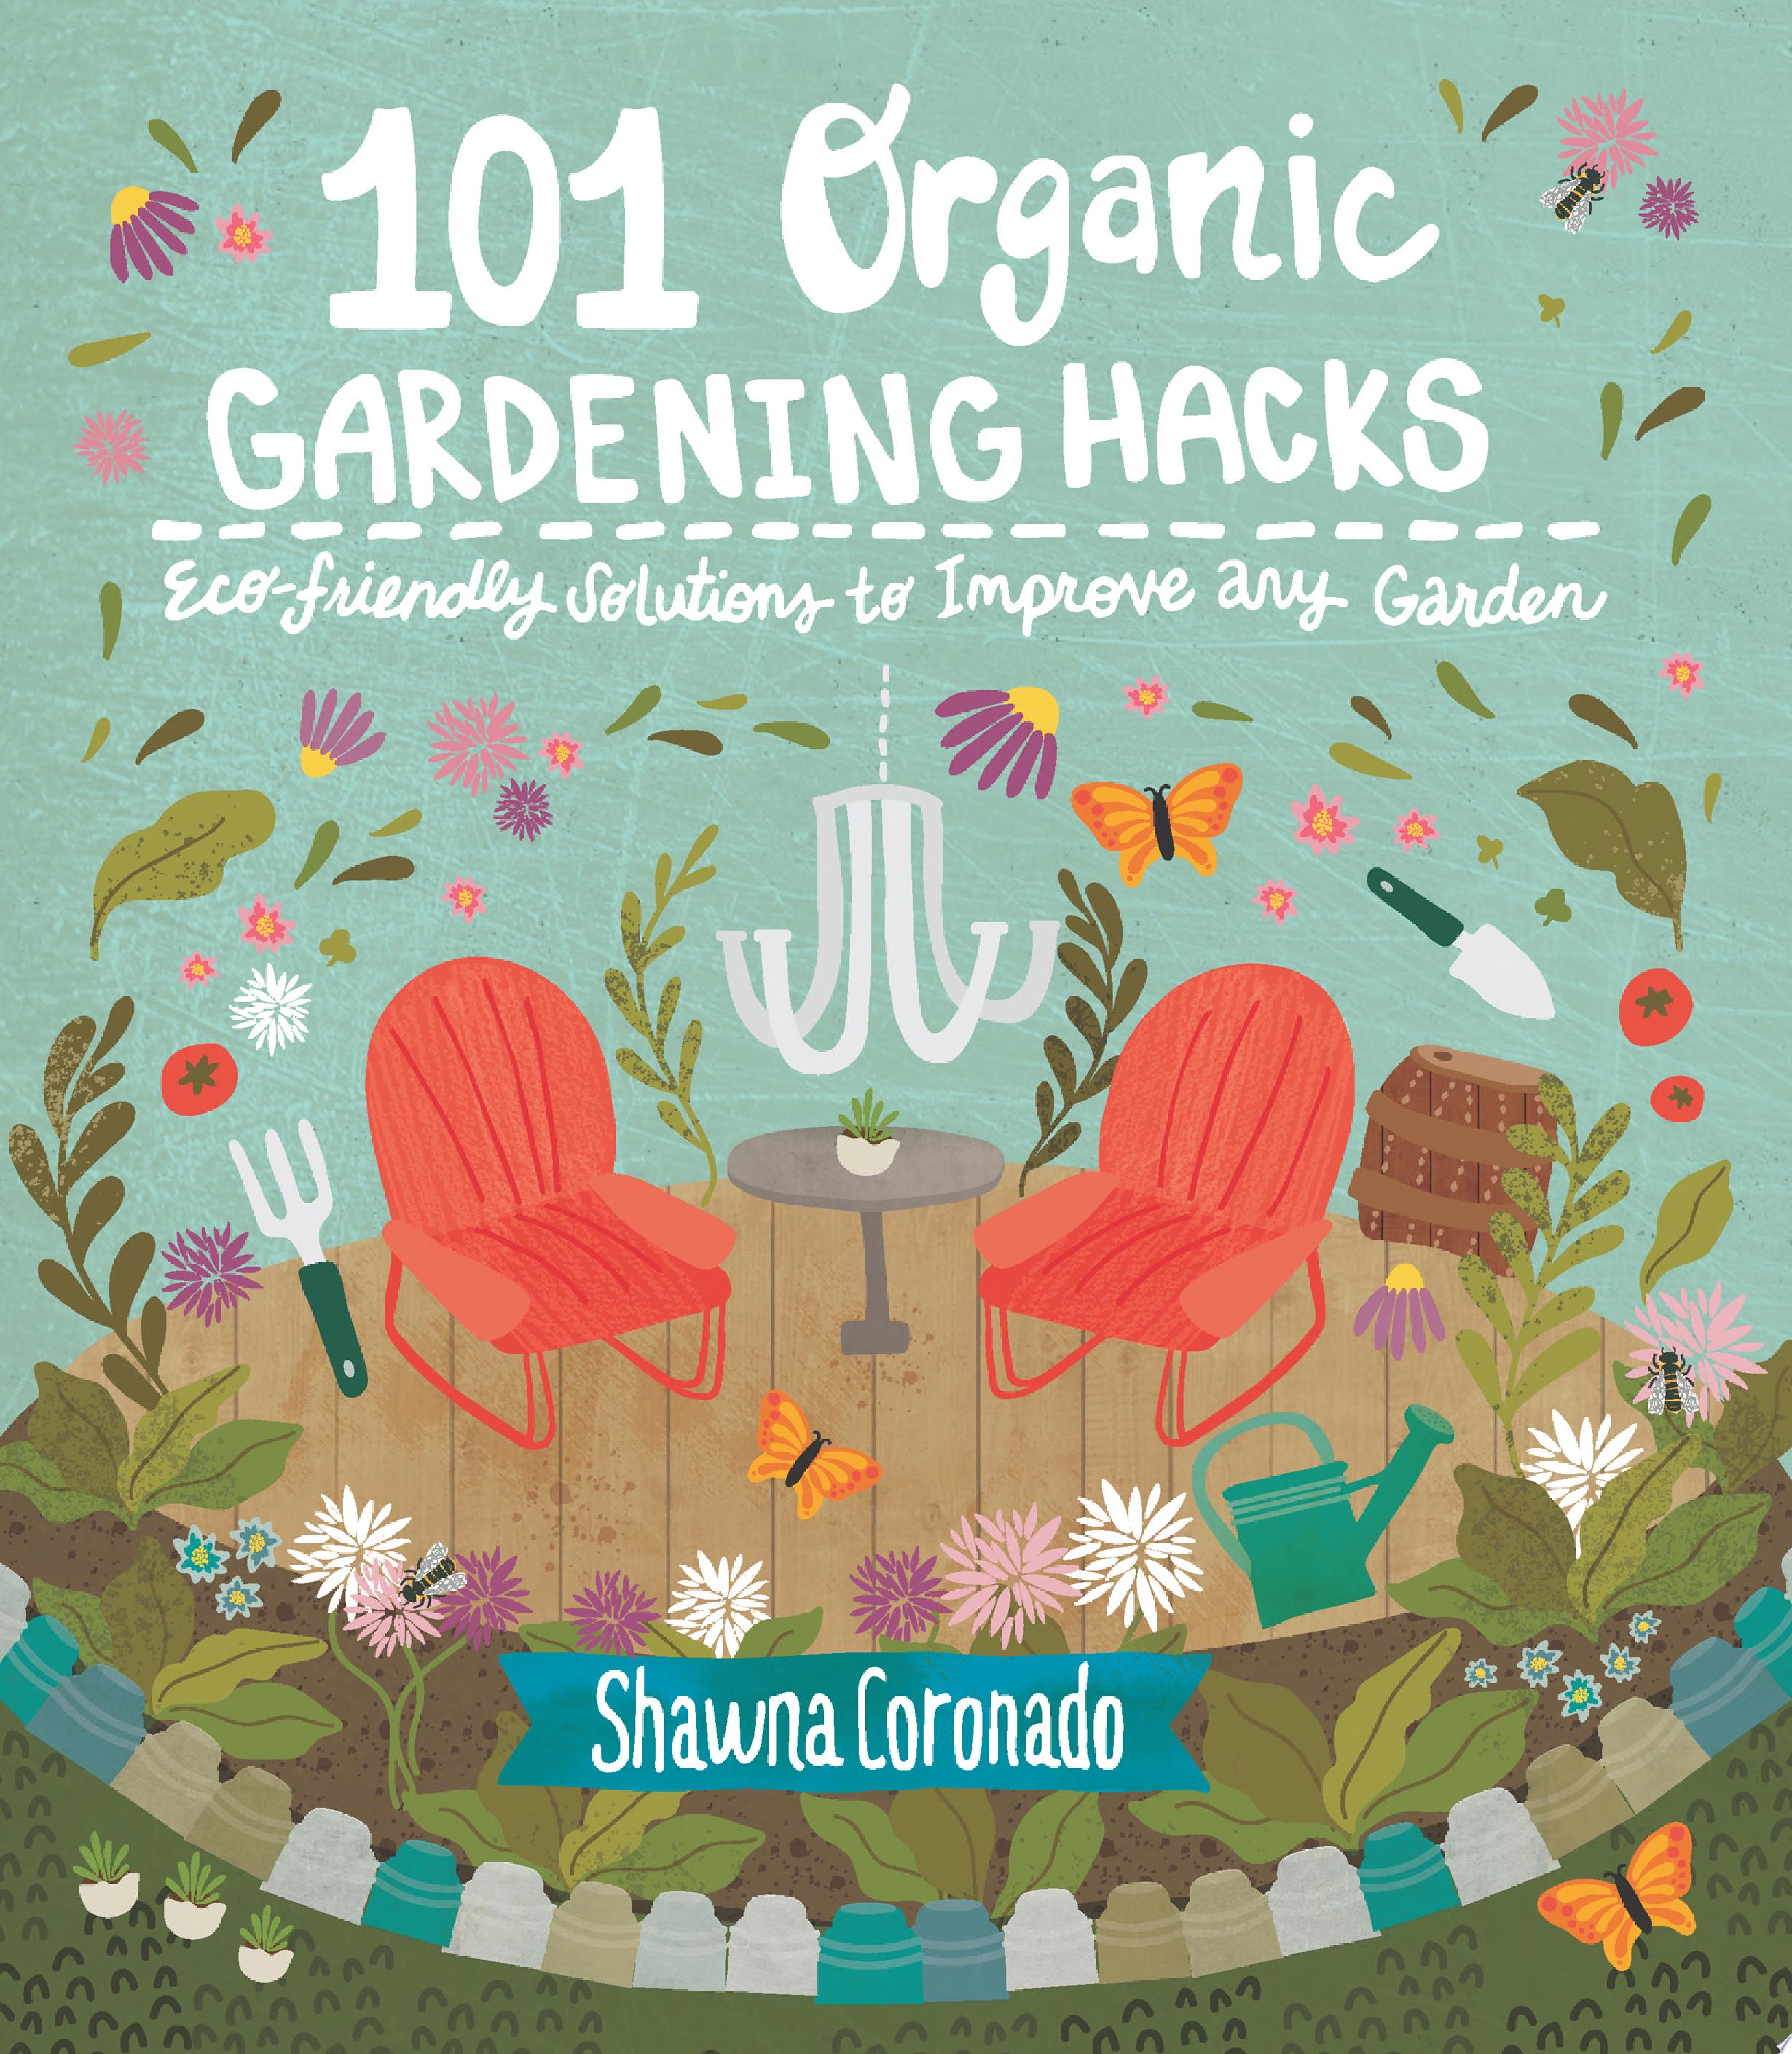 Image for "101 Organic Gardening Hacks"